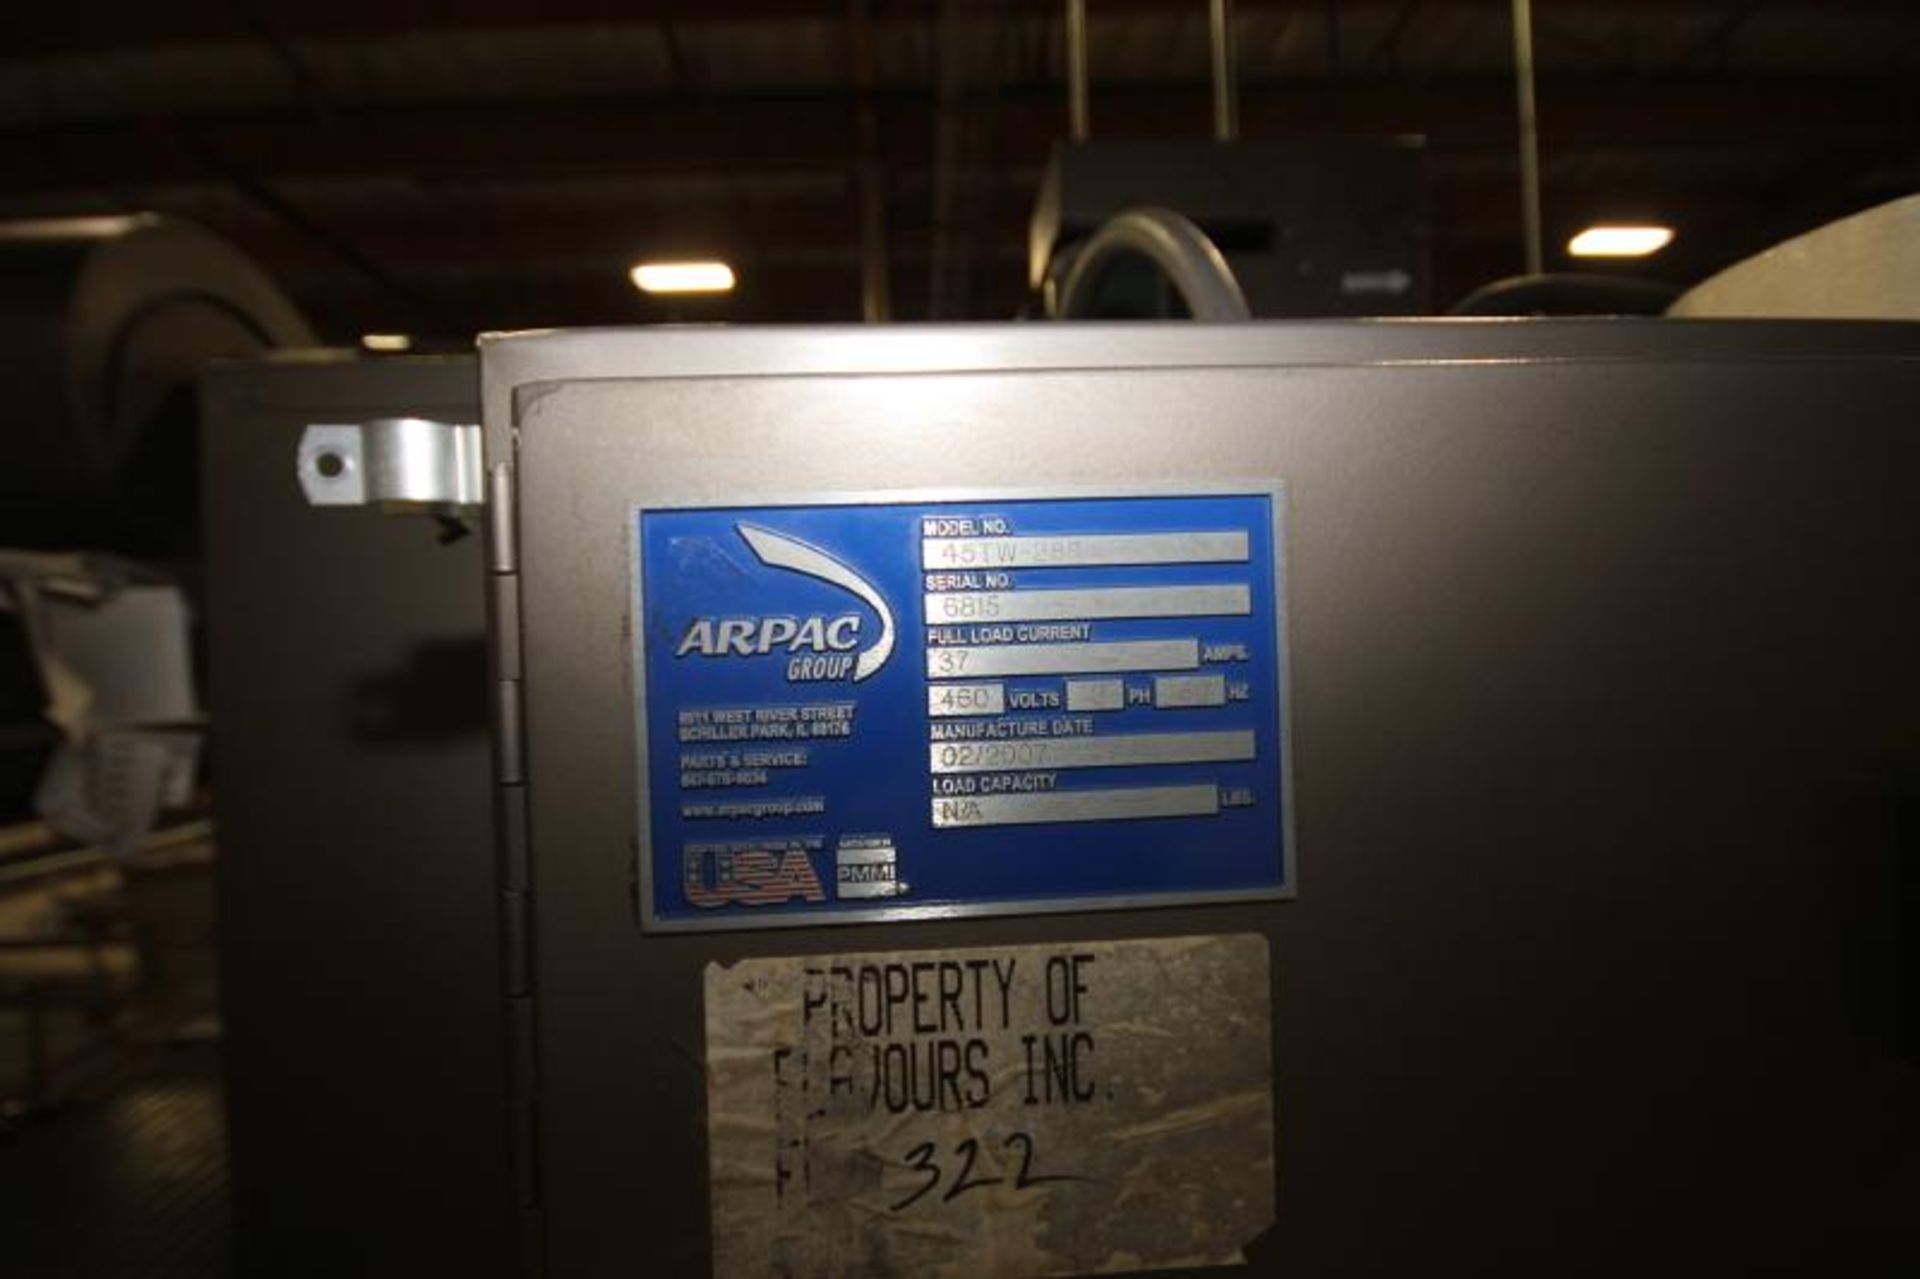 2007 Arpac Shrink Wrapper / Bundler, Model 4STW-288, S/N 6815 (Located Yorba Linda, CA) - Image 2 of 3